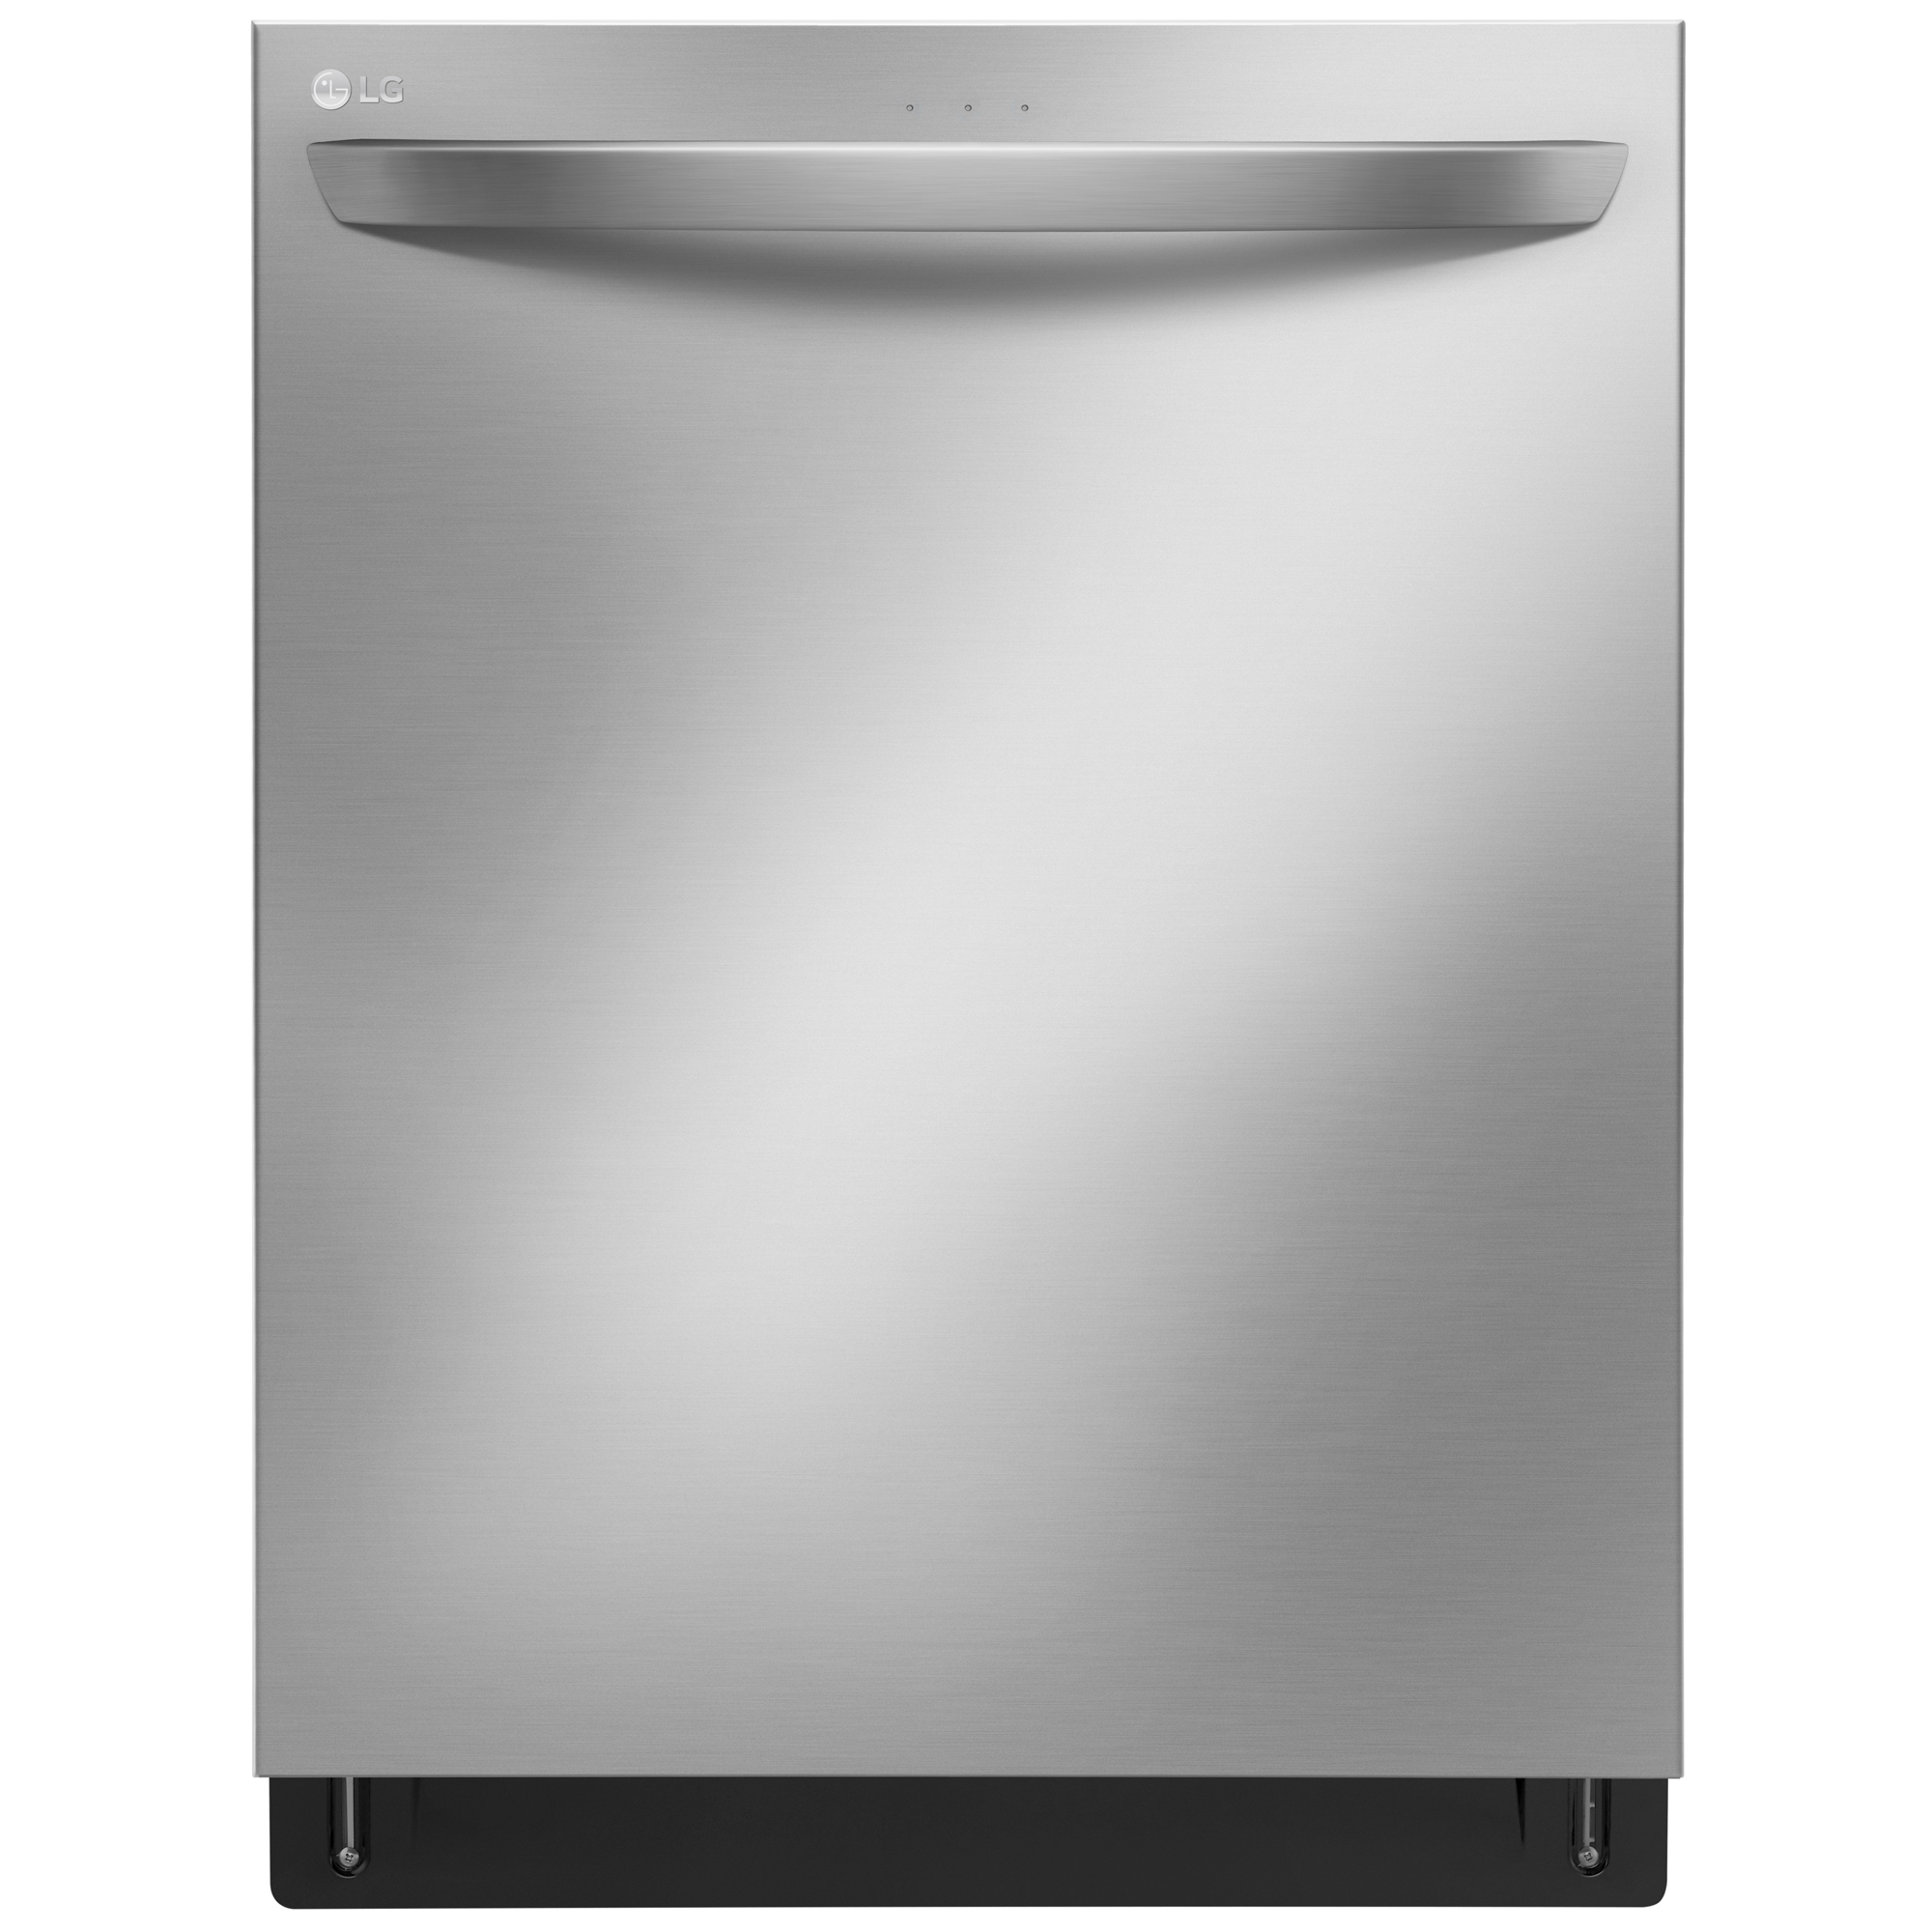 Dishwasher logo